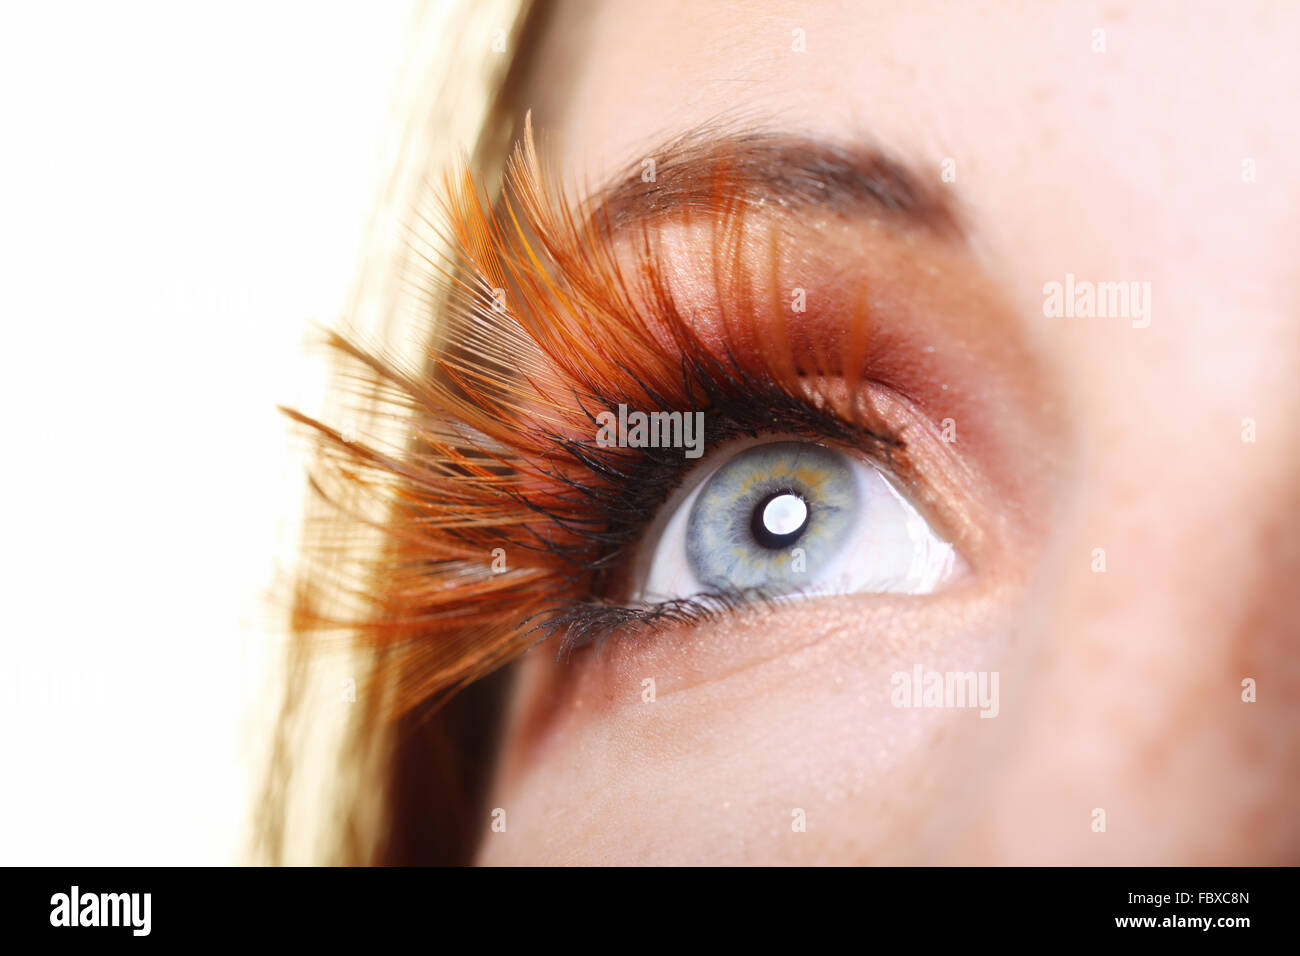 Female eye stylish creative make up false lashes Stock Photo